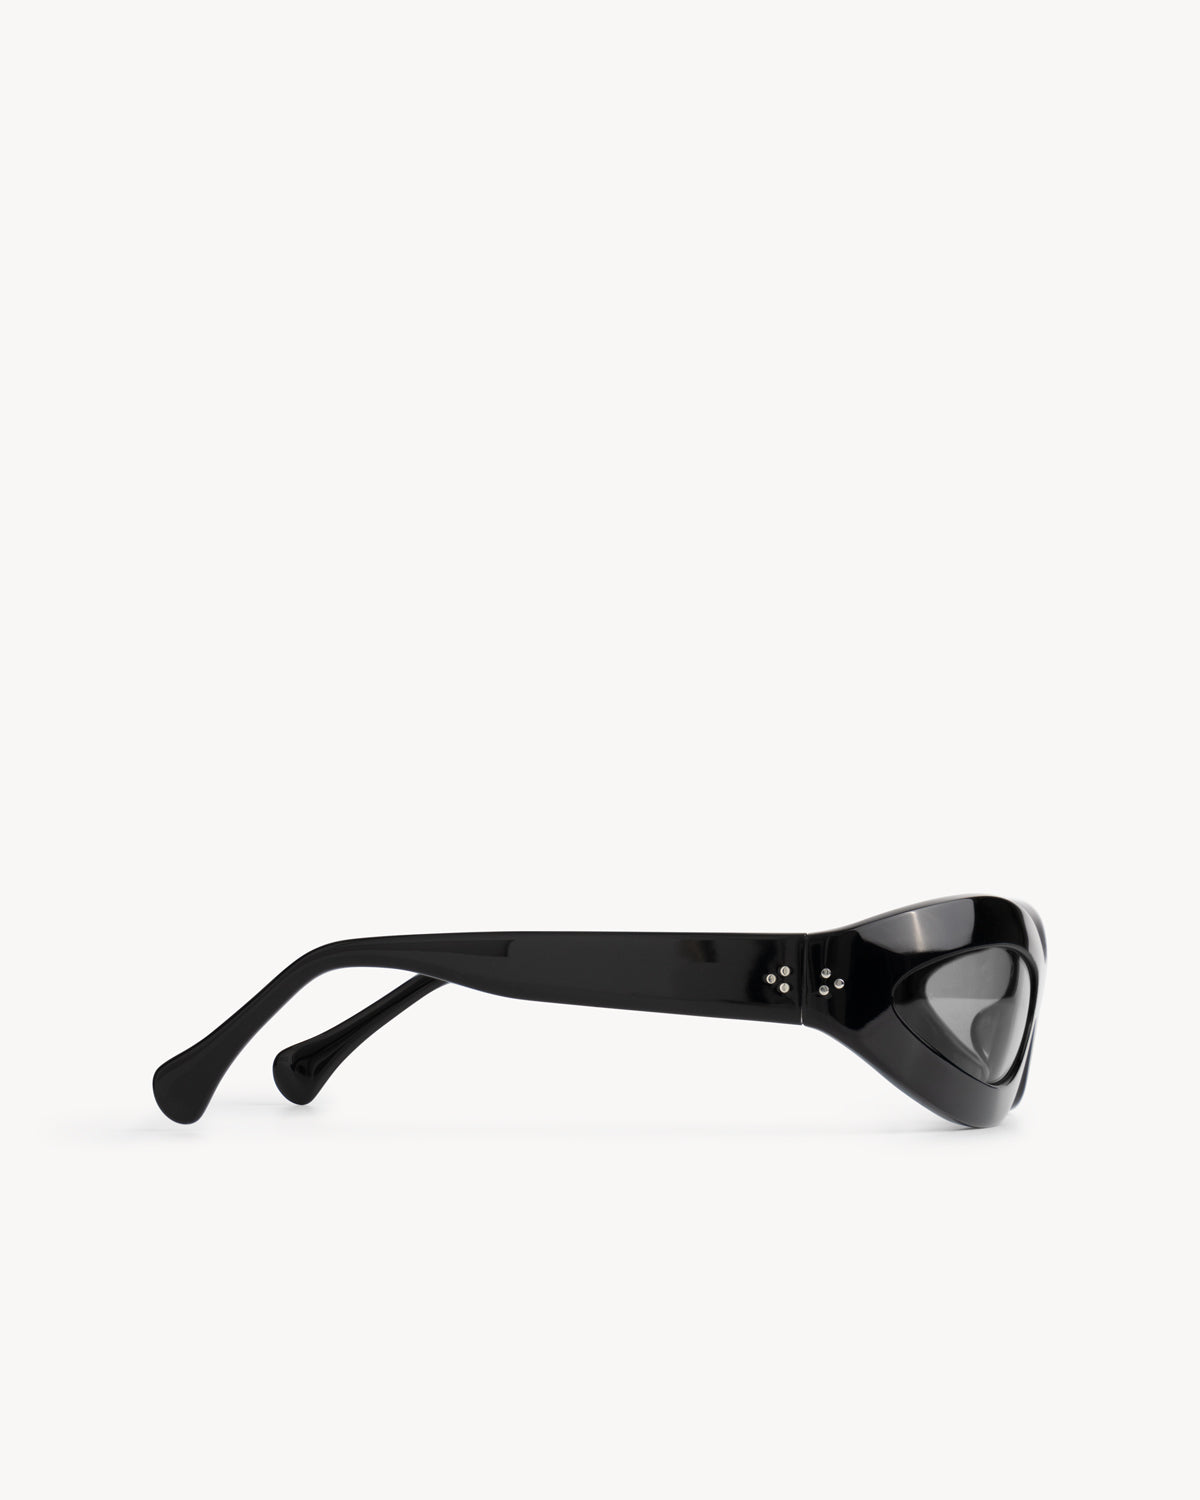 Port Tanger Summa Sunglasses in Black Acetate and Black Lenses 4